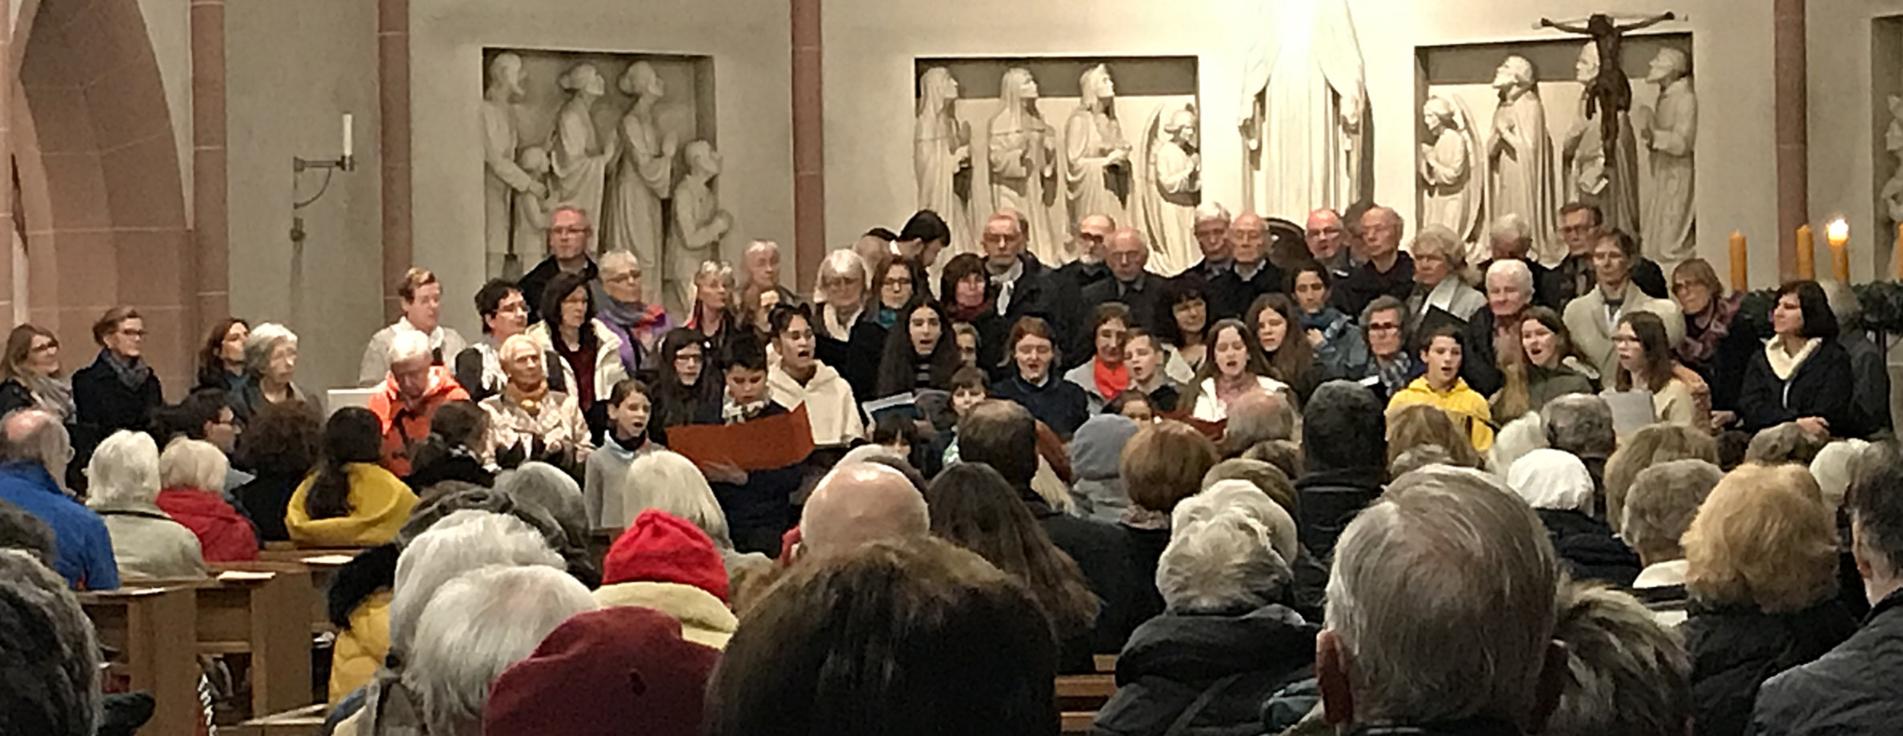 Der Kinder- und Jugendchor St. Bonifatius singt hier vor den Erwachsenen stehend (c) Brigitta Gebauer 2019